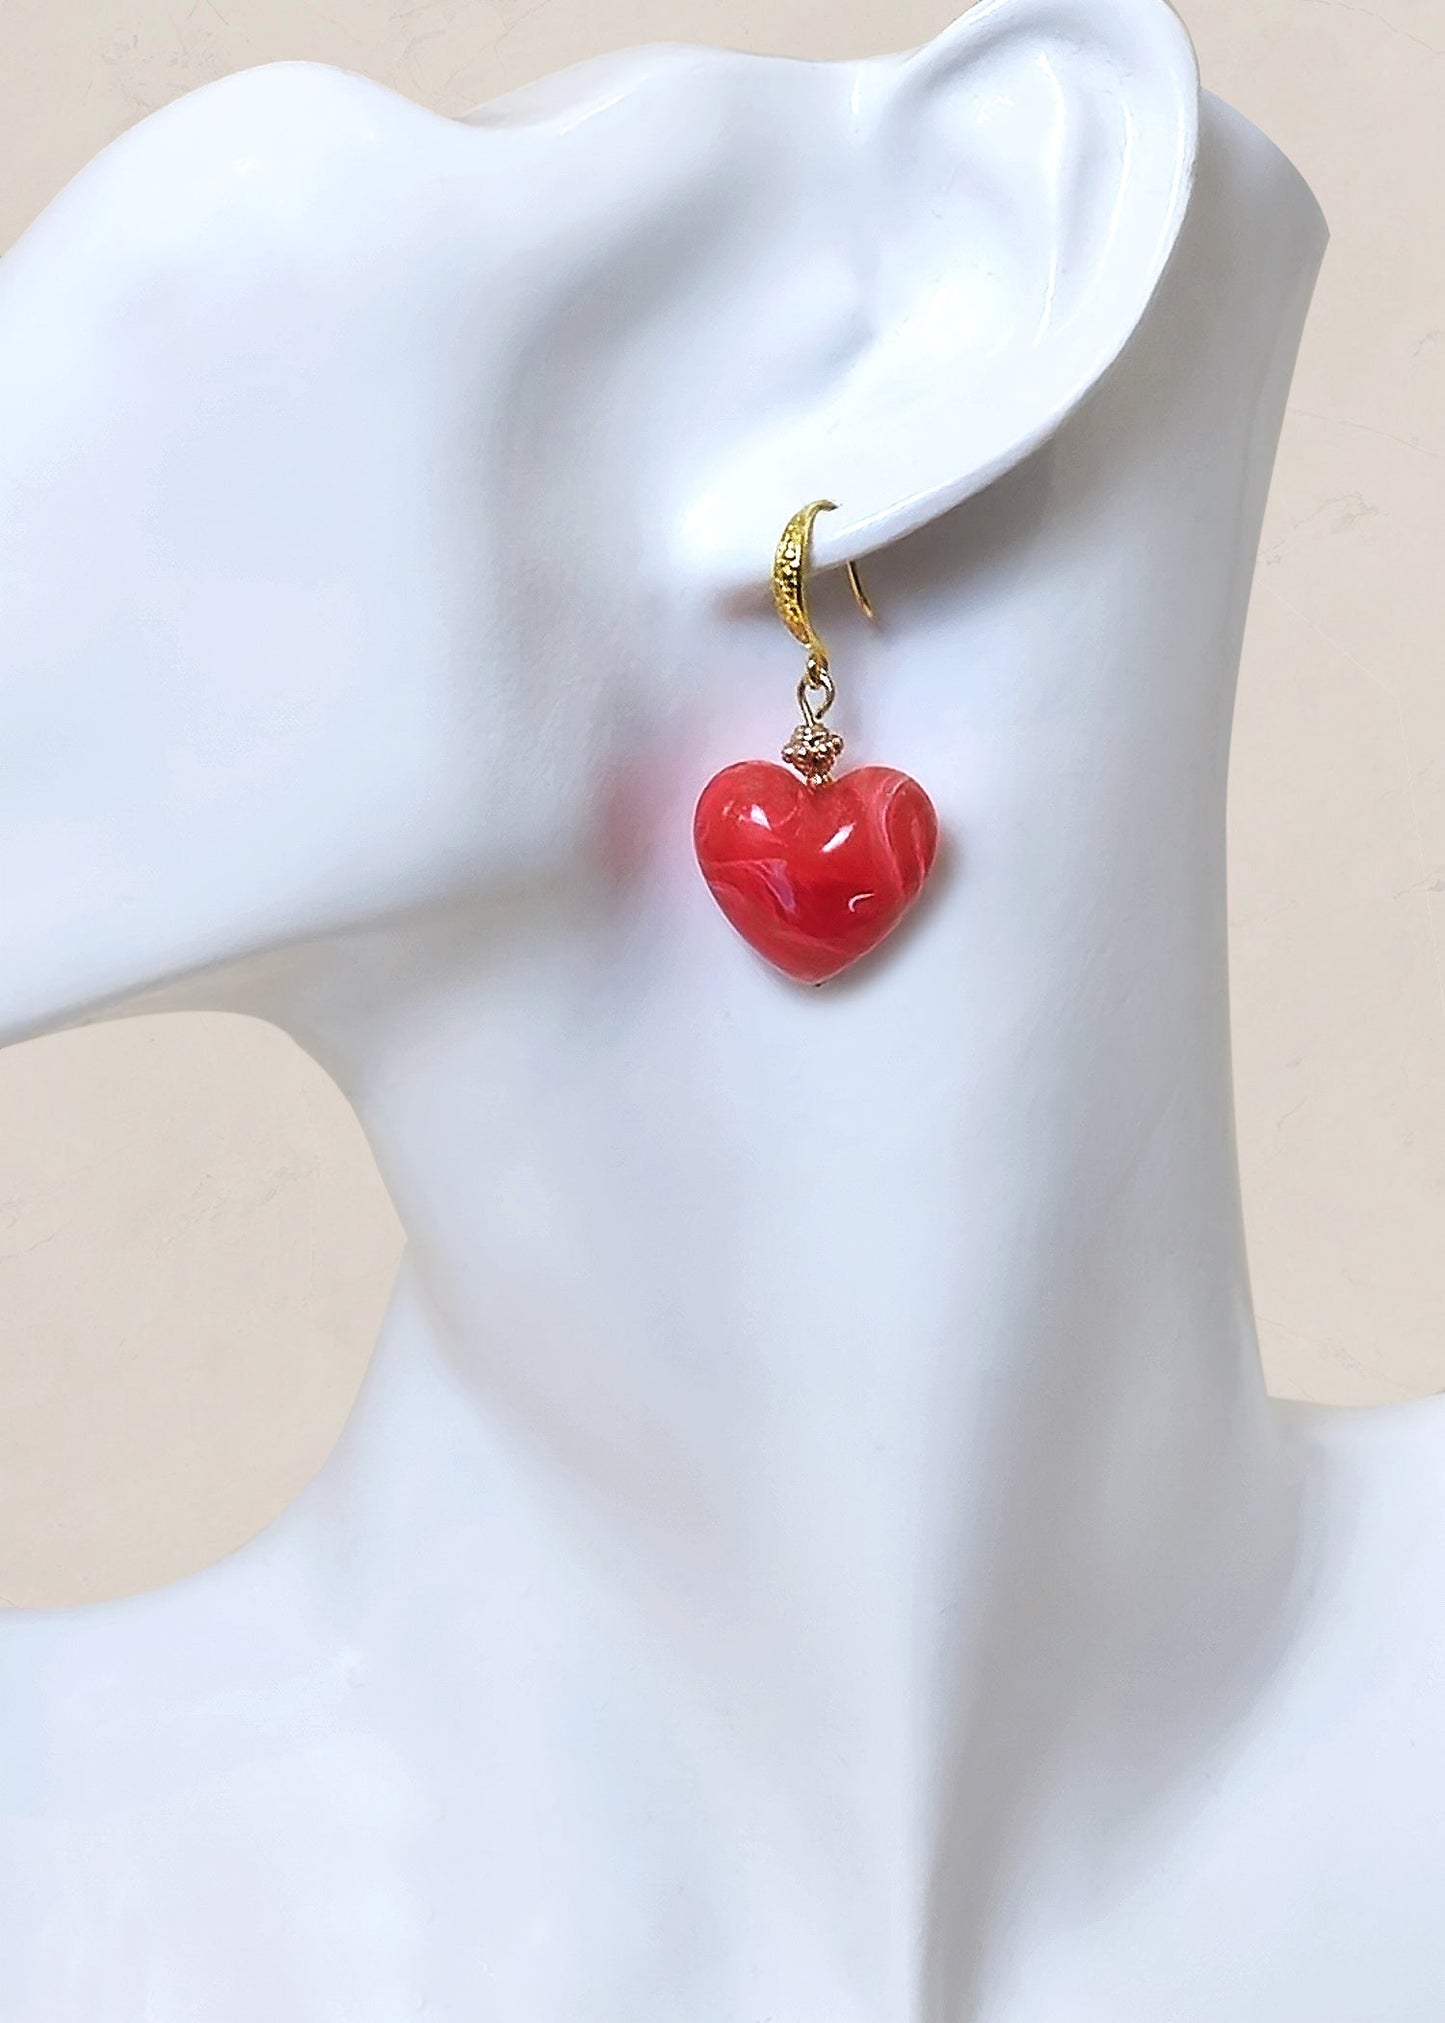 HEART Dangle Earrings